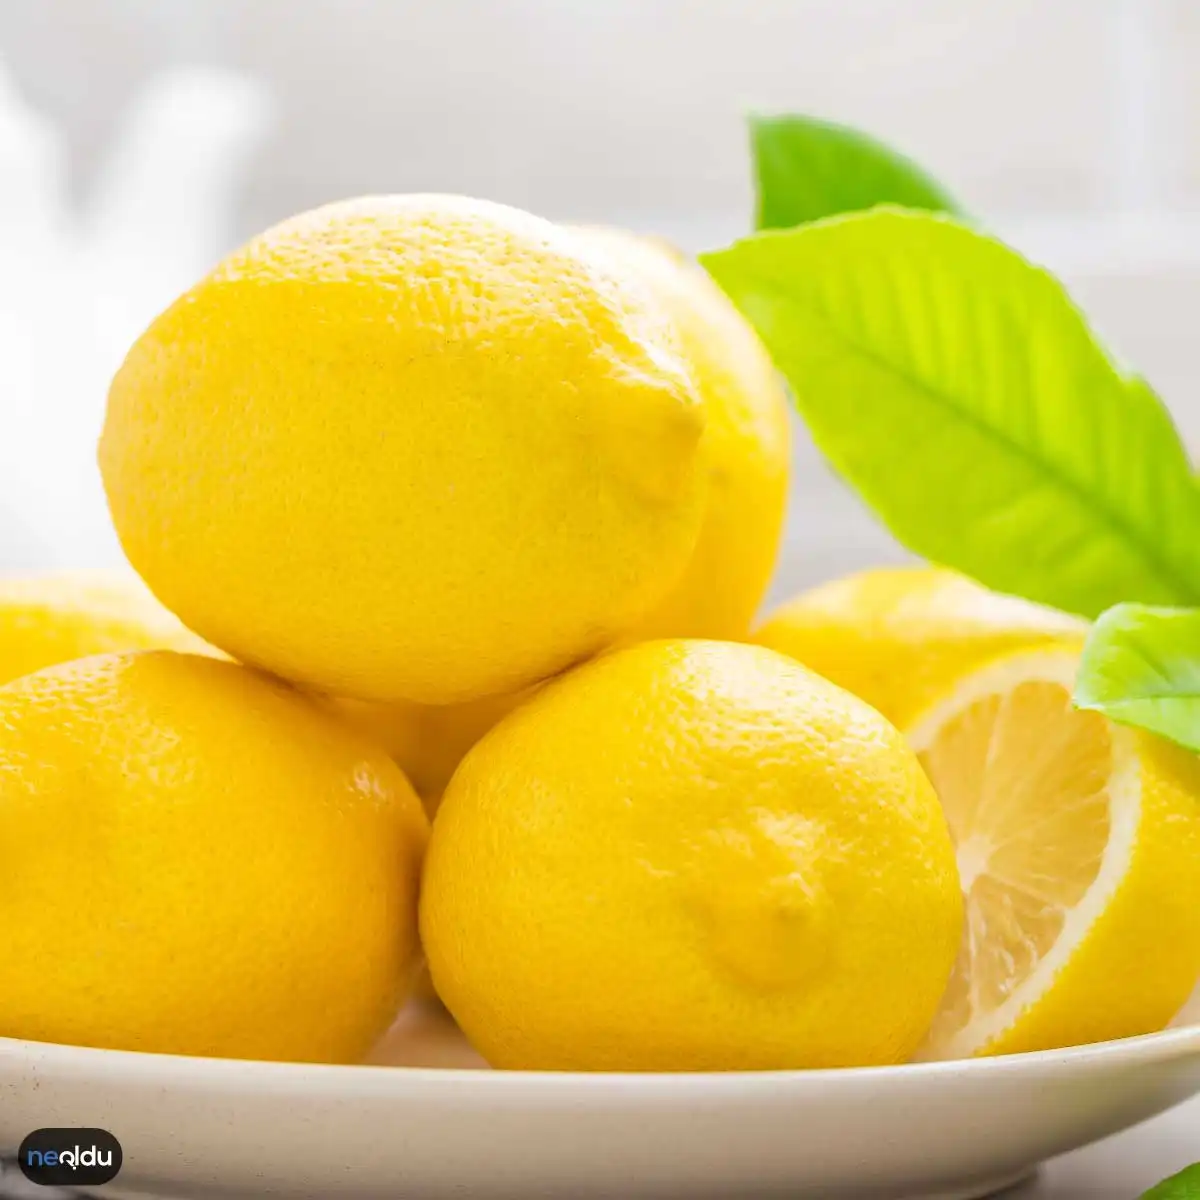 Limonun Bilinmeyen İnanılmaz Yönleri